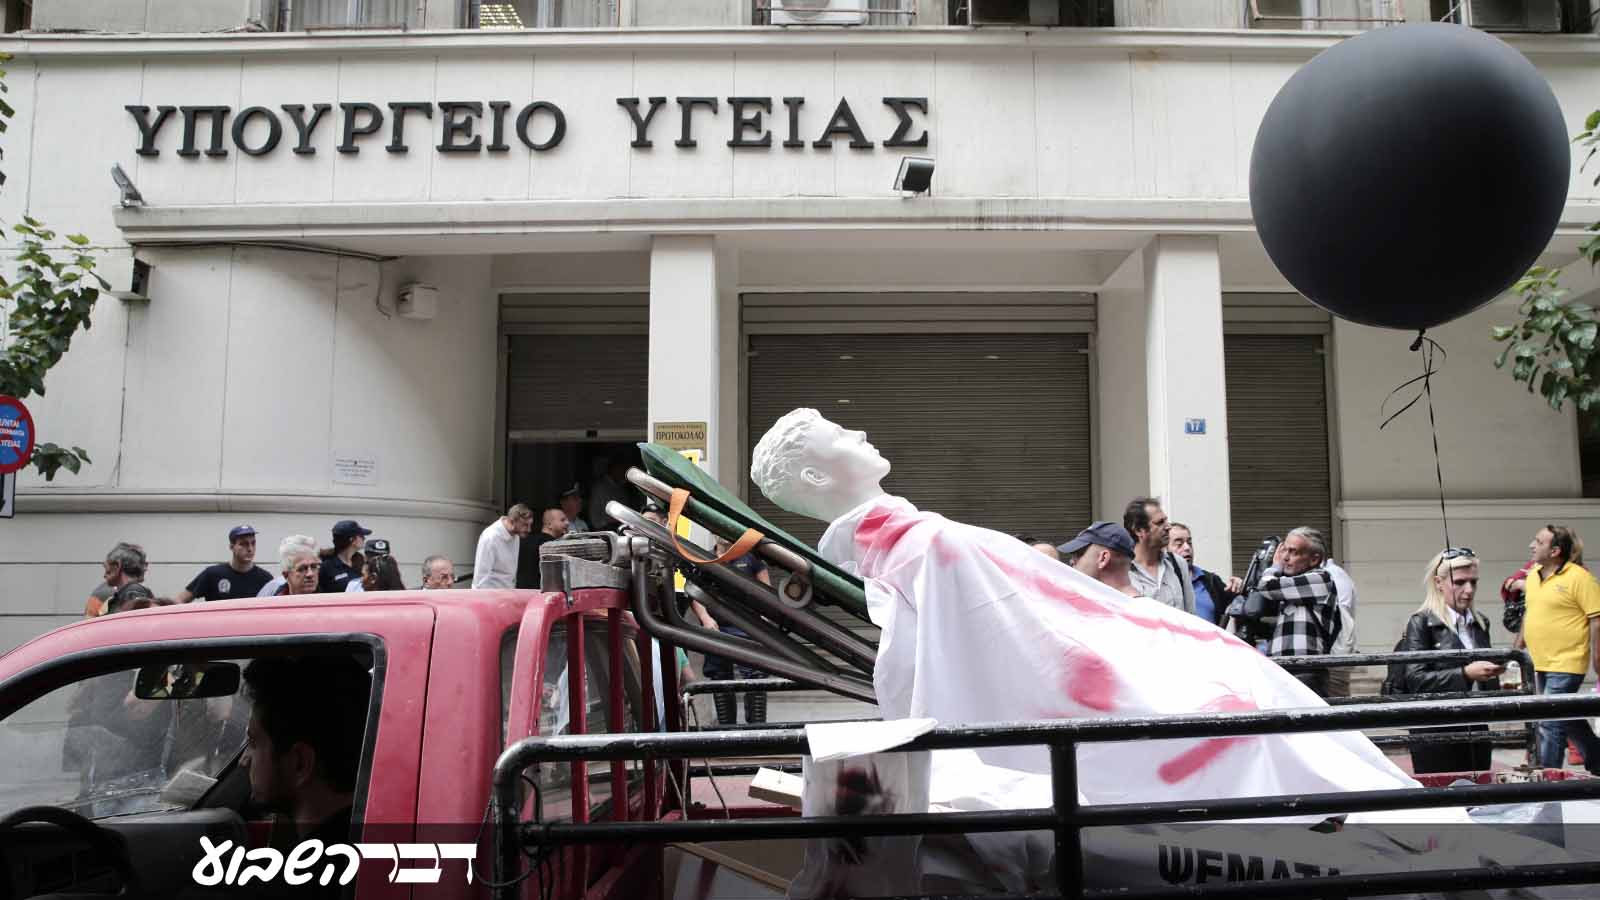 יוונים מפגינים מול משרד הבריאות במחאה על תנאי העבודה והשירות בבתי החולים הממשלתיים 6 באוקטובר 2016 (Photo by Ayhan Mehmet/Anadolu Agency/Getty Images IL)